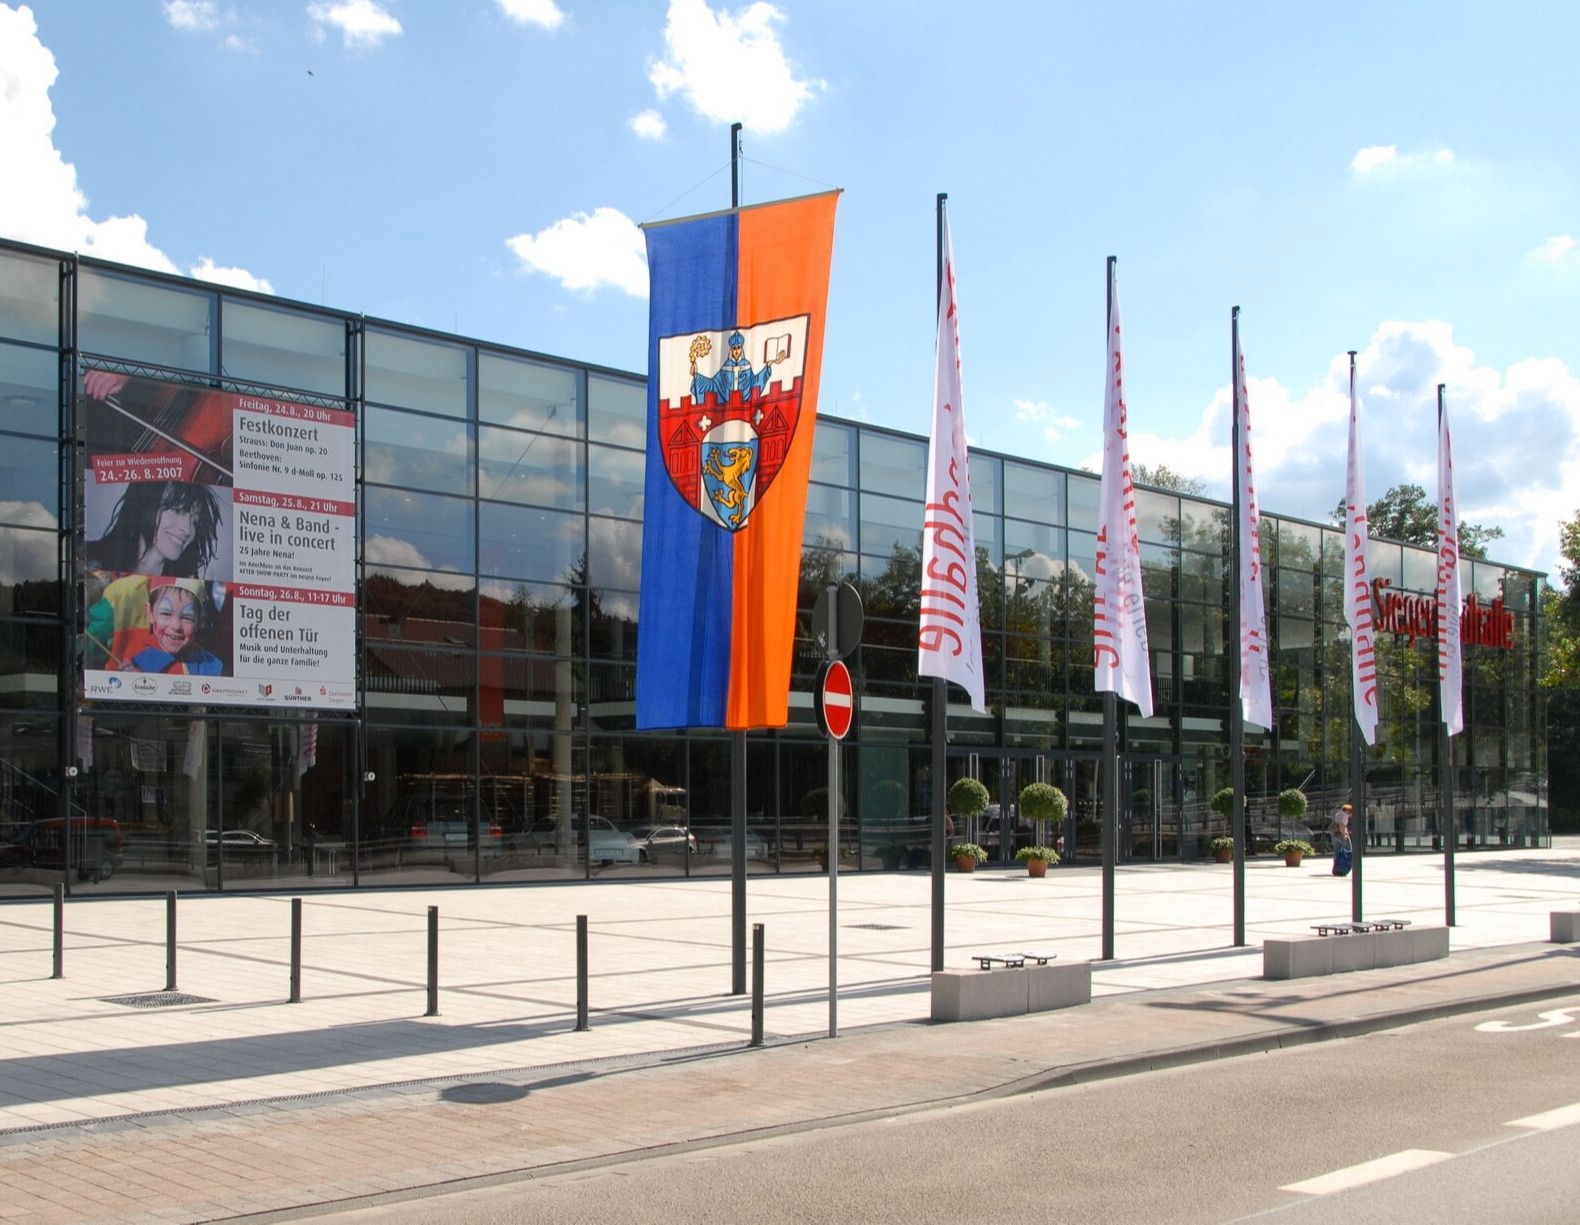 Meeting and convention center Siegerlandhalle (Siegerlandhalle)